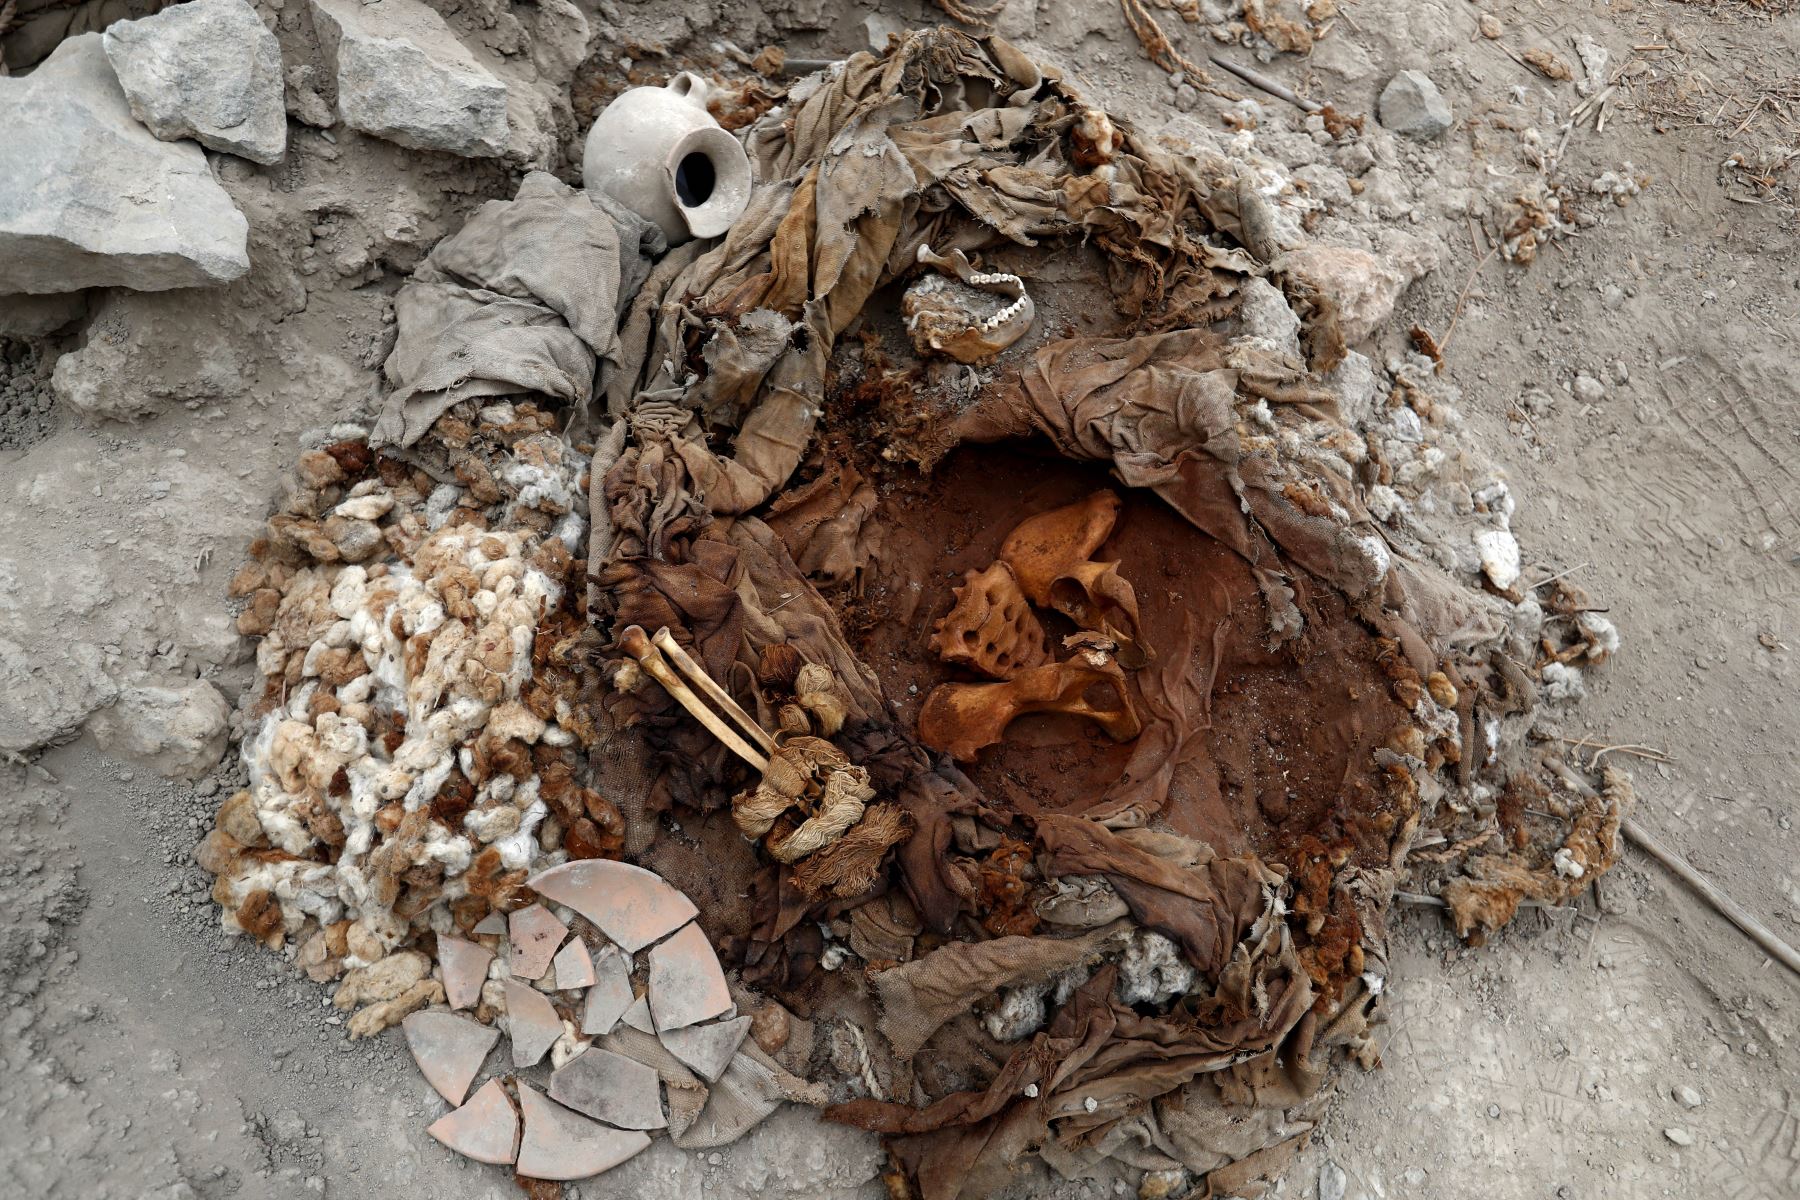 Uno de los 3 fardos funerarios descubiertos en la huaca Tambo Inga de Puente Piedra corresponde a una mujer de entre 18 a 23 años de edad. Foto: ANDINA/Daniel Bracamonte